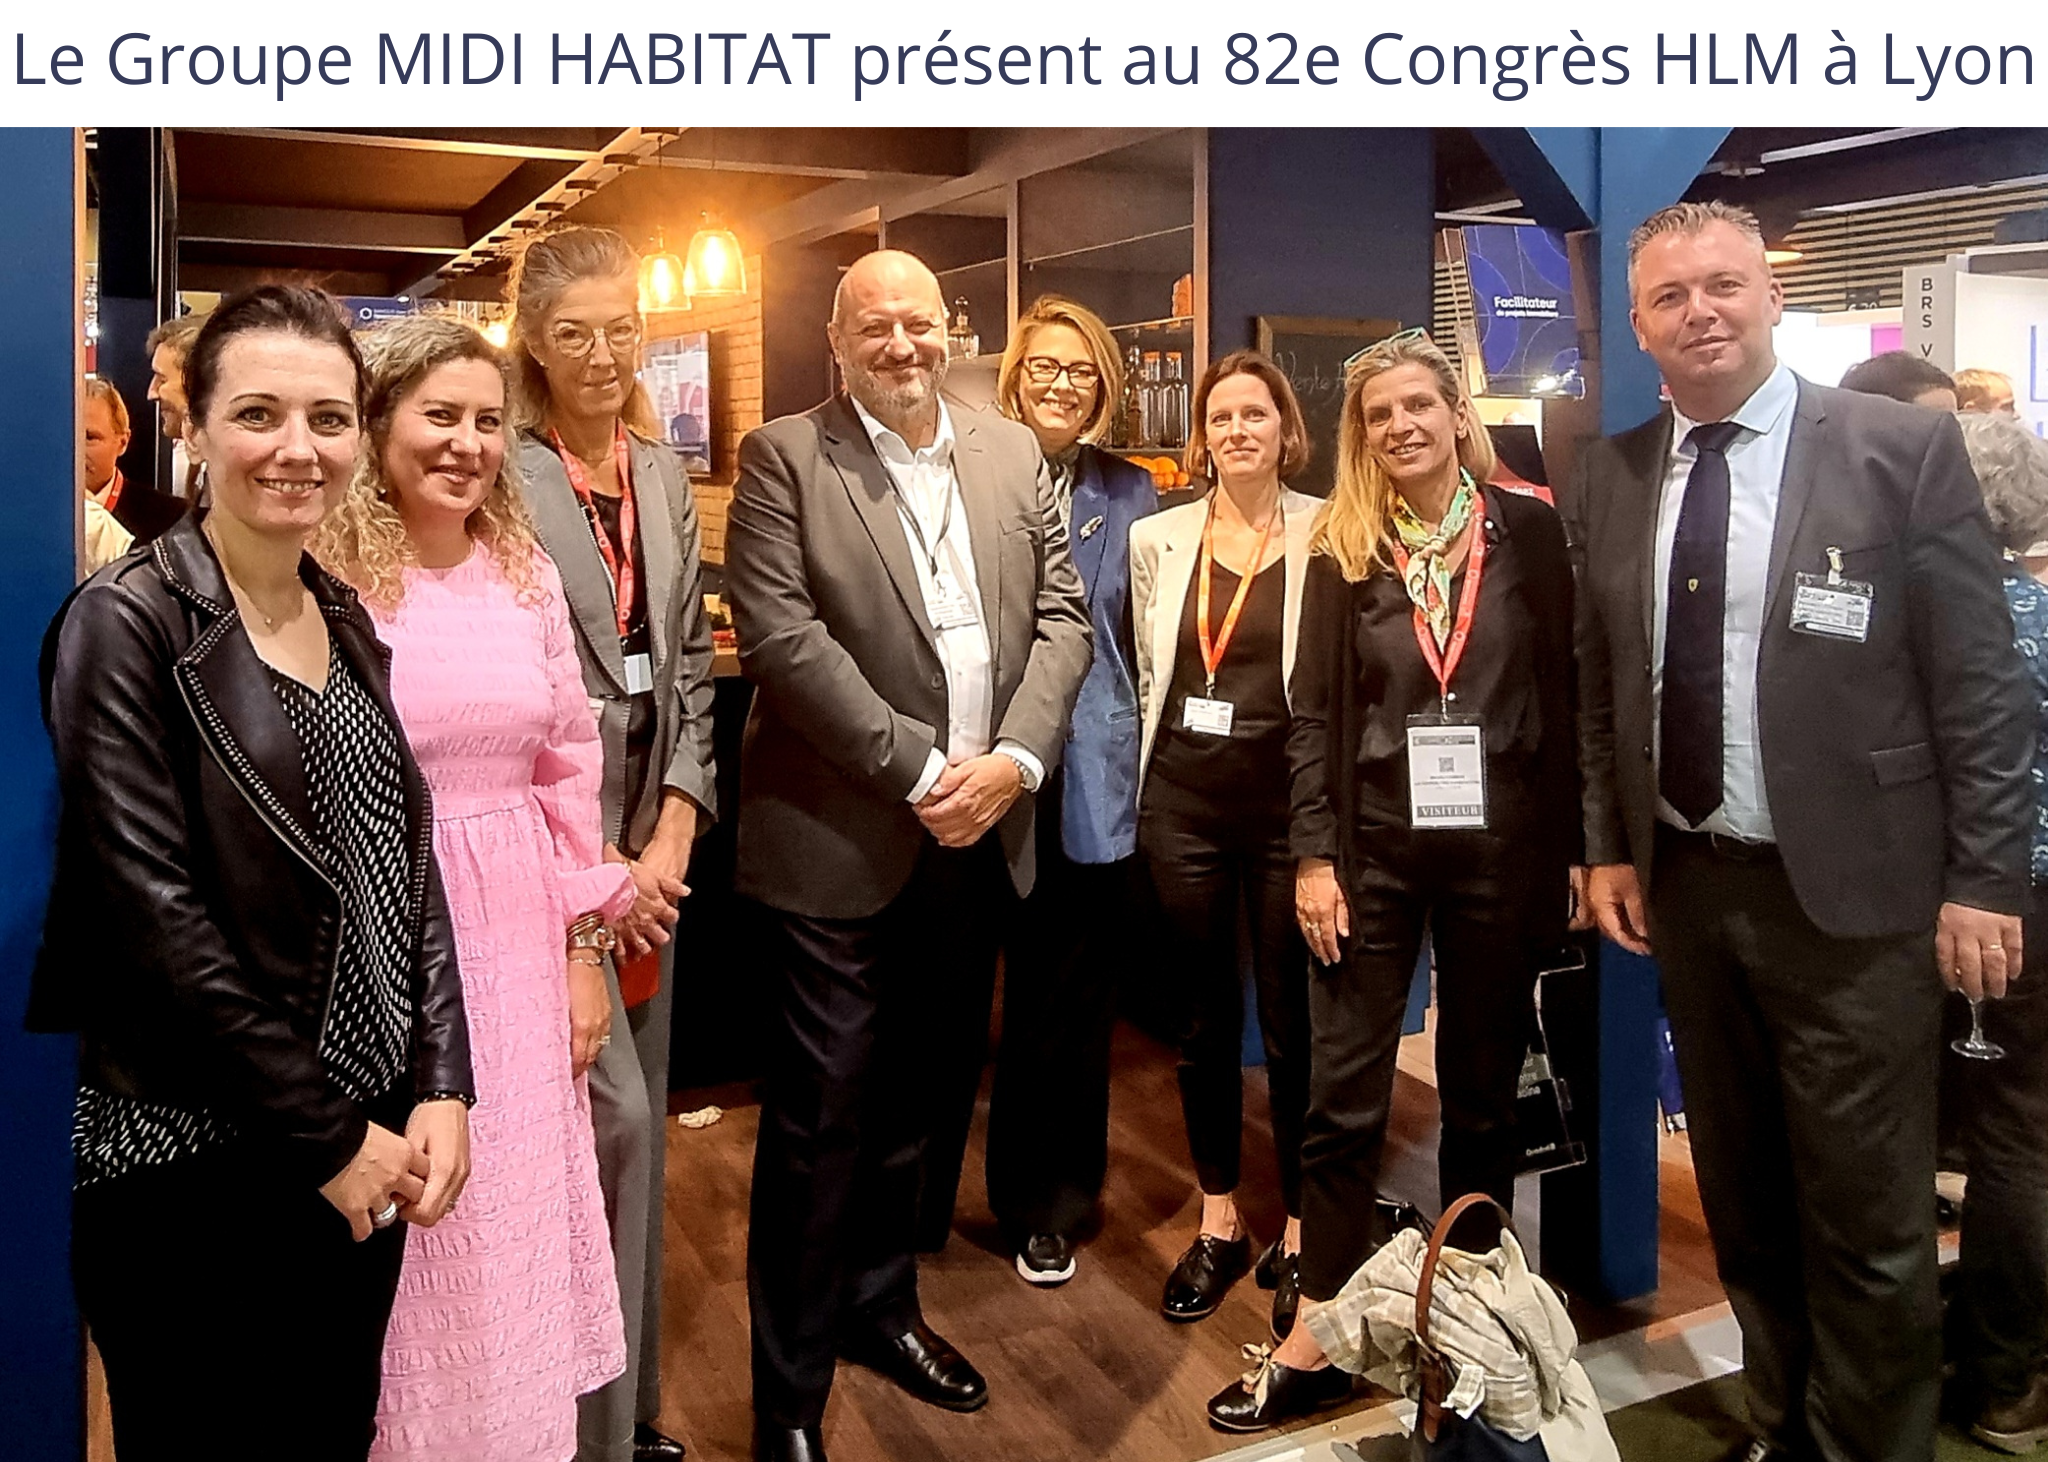 Le Groupe MIDI HABITAT présent au 82e Congrès HLM à Lyon